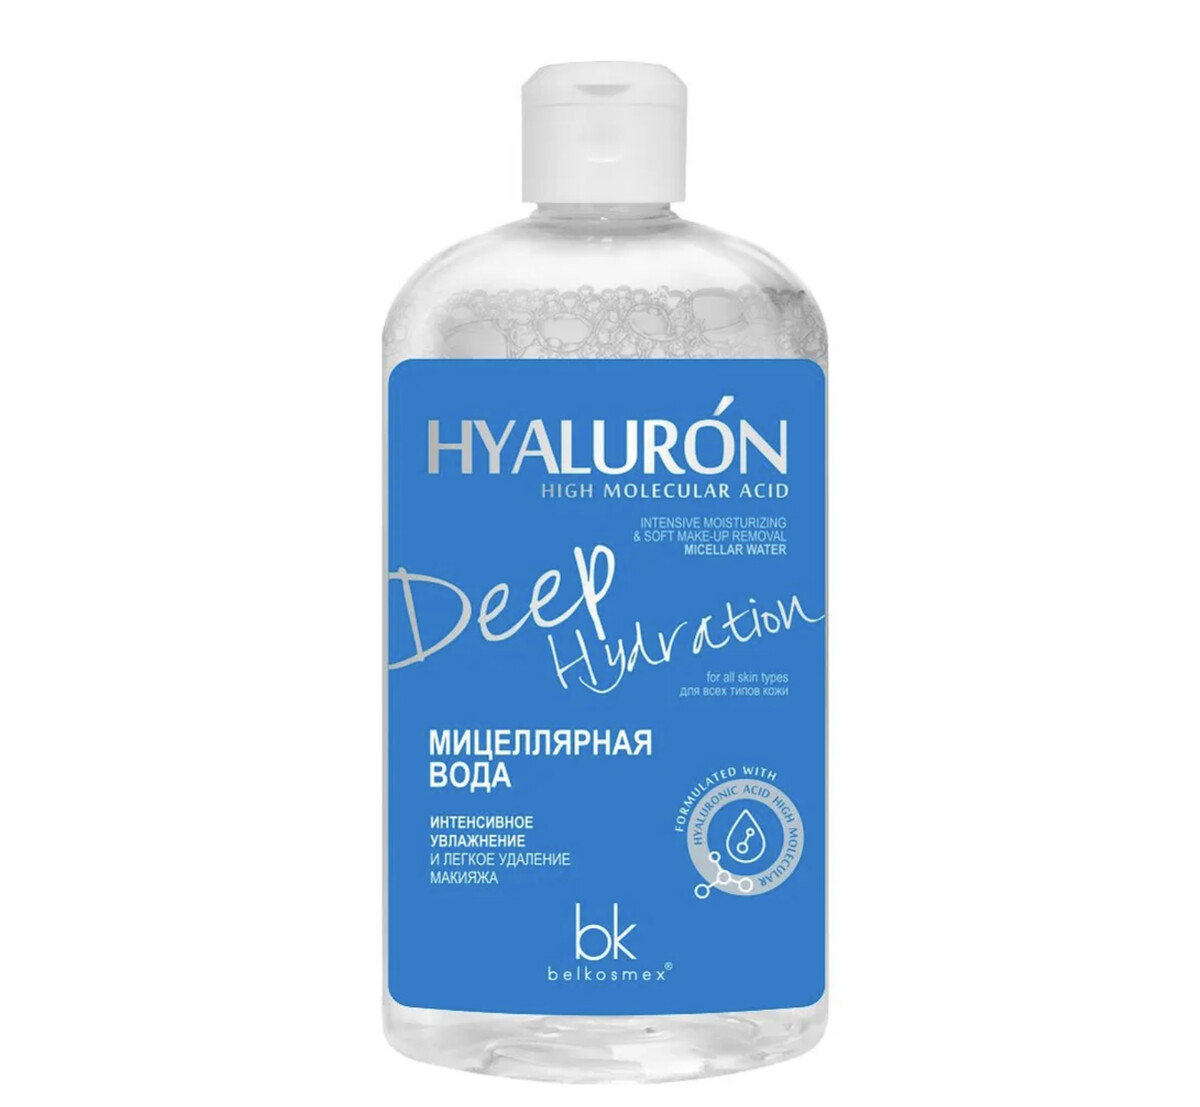 Hialuron deep hydration мицеллярная вода интенсивное увлажнение 500г hialuron deep hydration тонер интенсивное увлажнение с финиш эффектом 200г